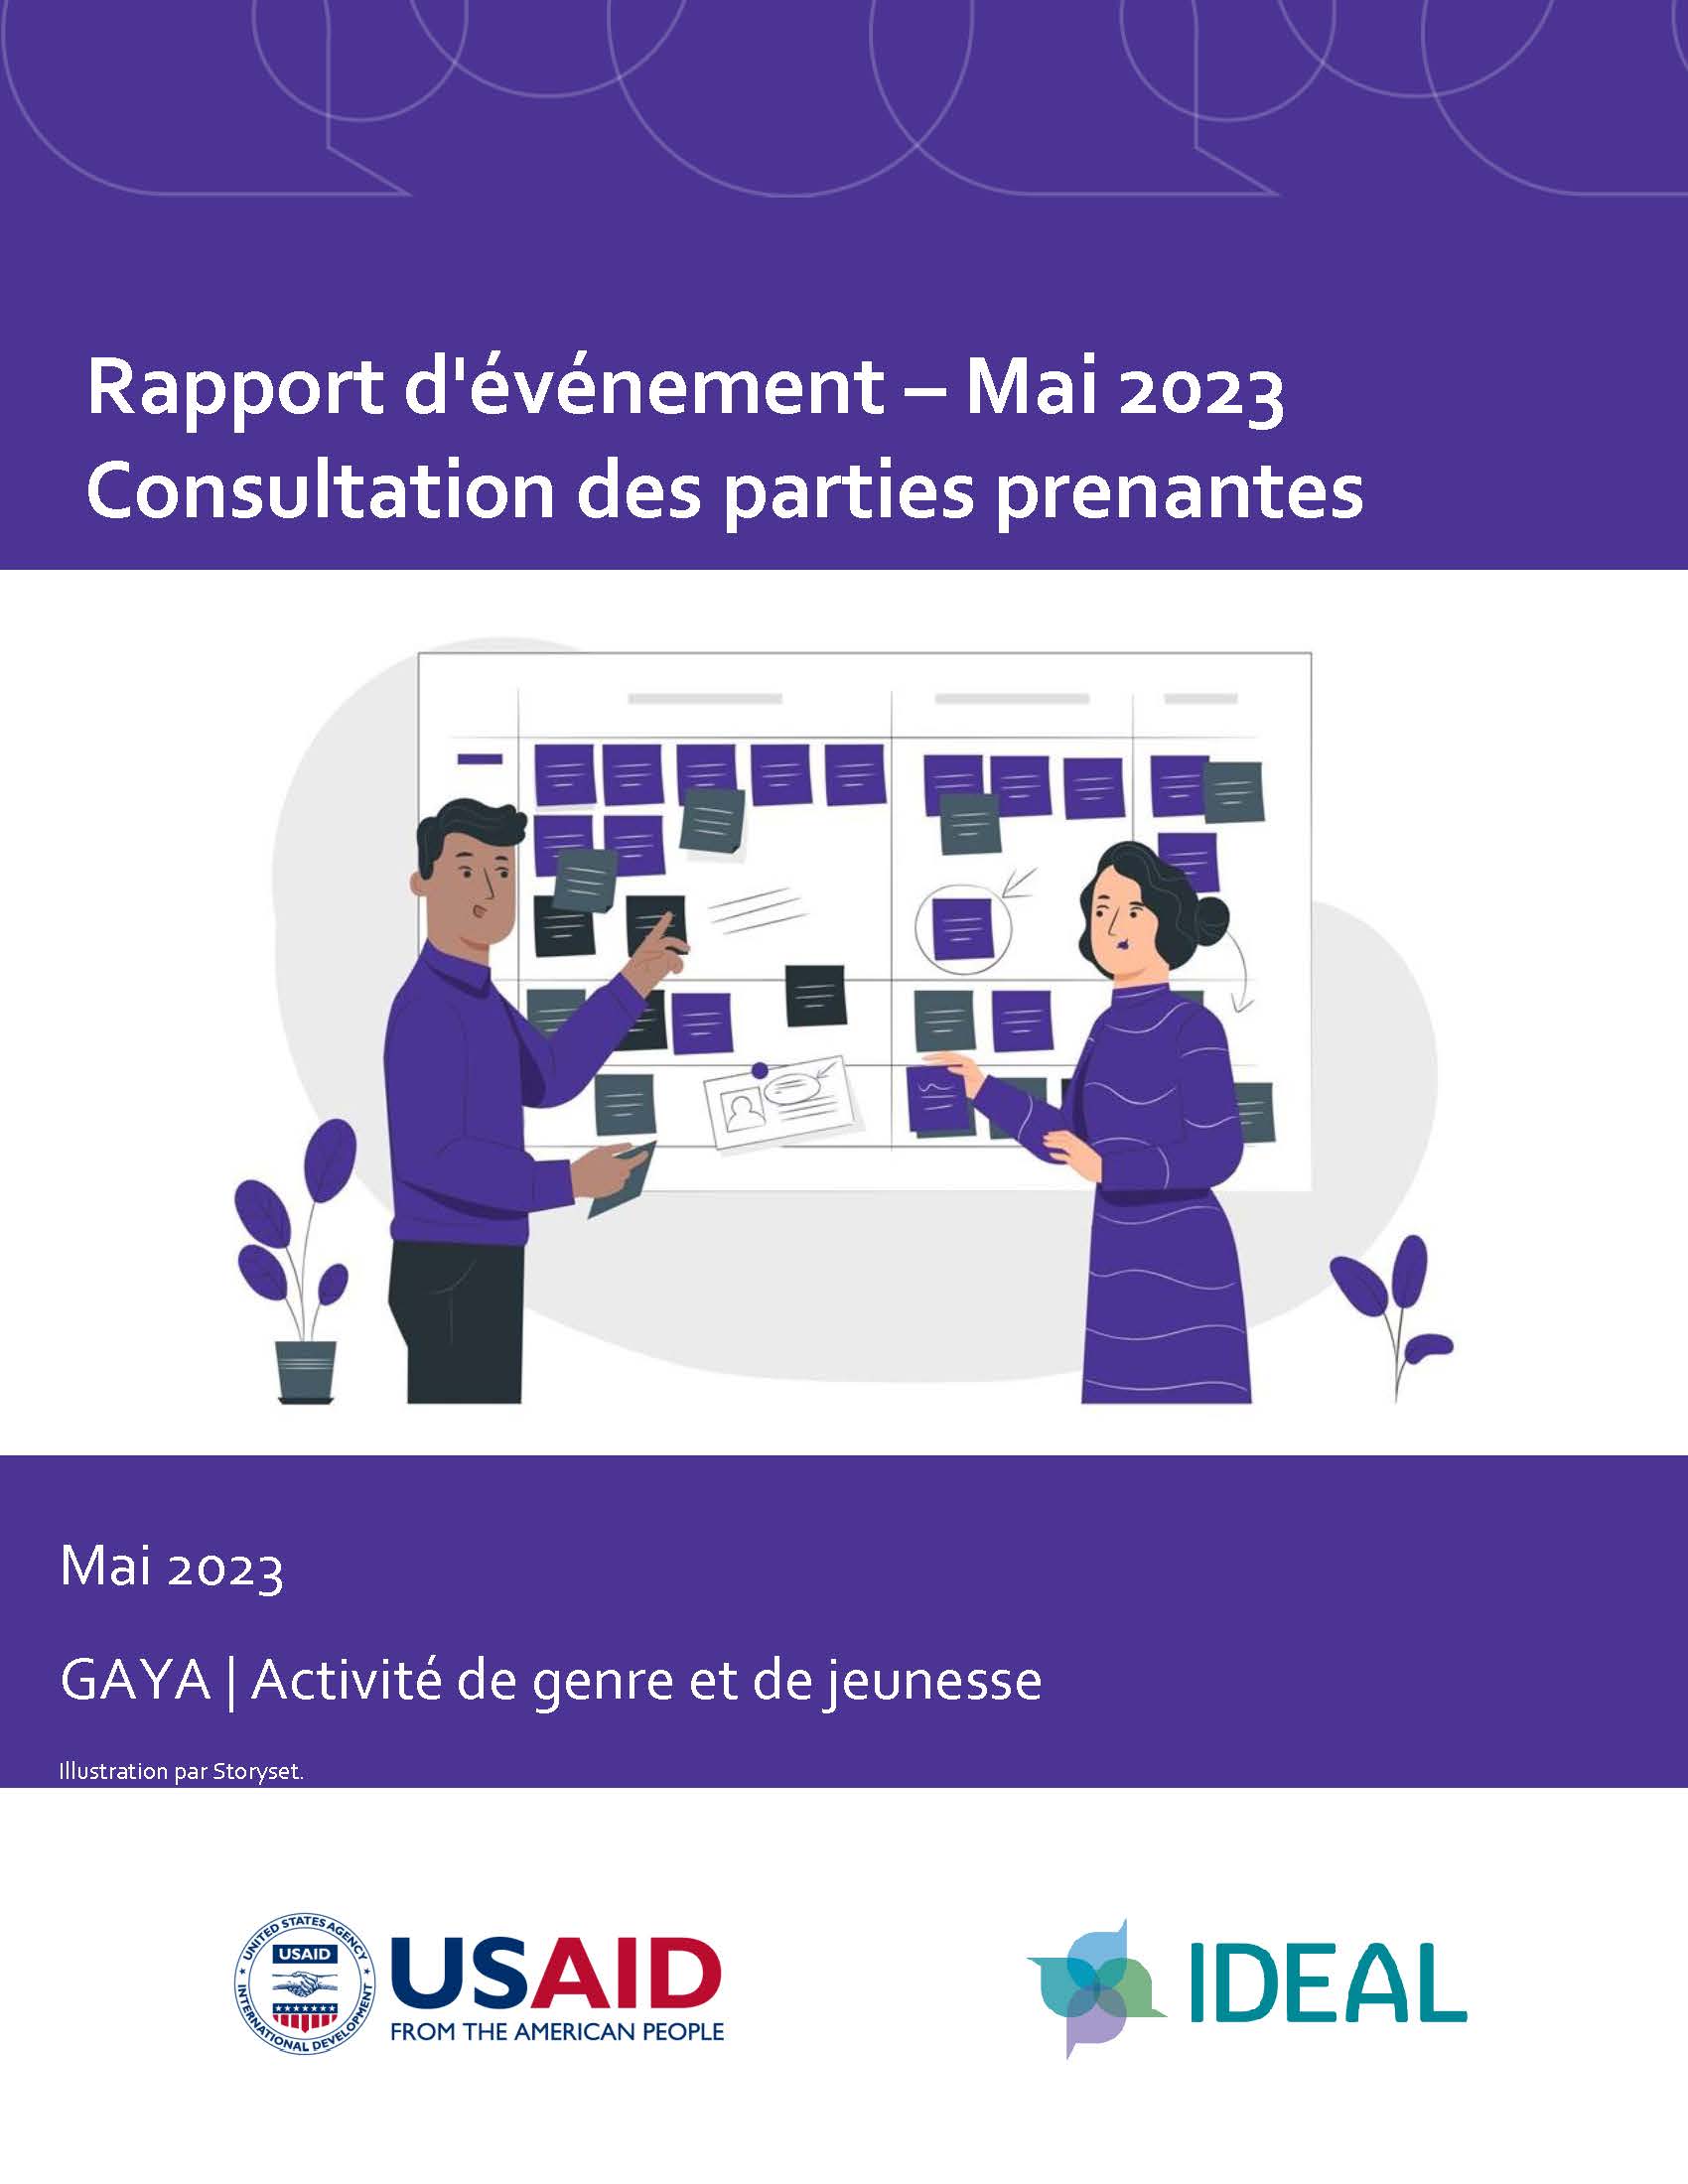 Page de couverture du rapport d'événement, intitulé "Rapport d'événement - Mai 2023 Consultation des parties prenantes" et un graphique représentant deux personnes discutant devant un tableau rempli de notes autocollantes. 